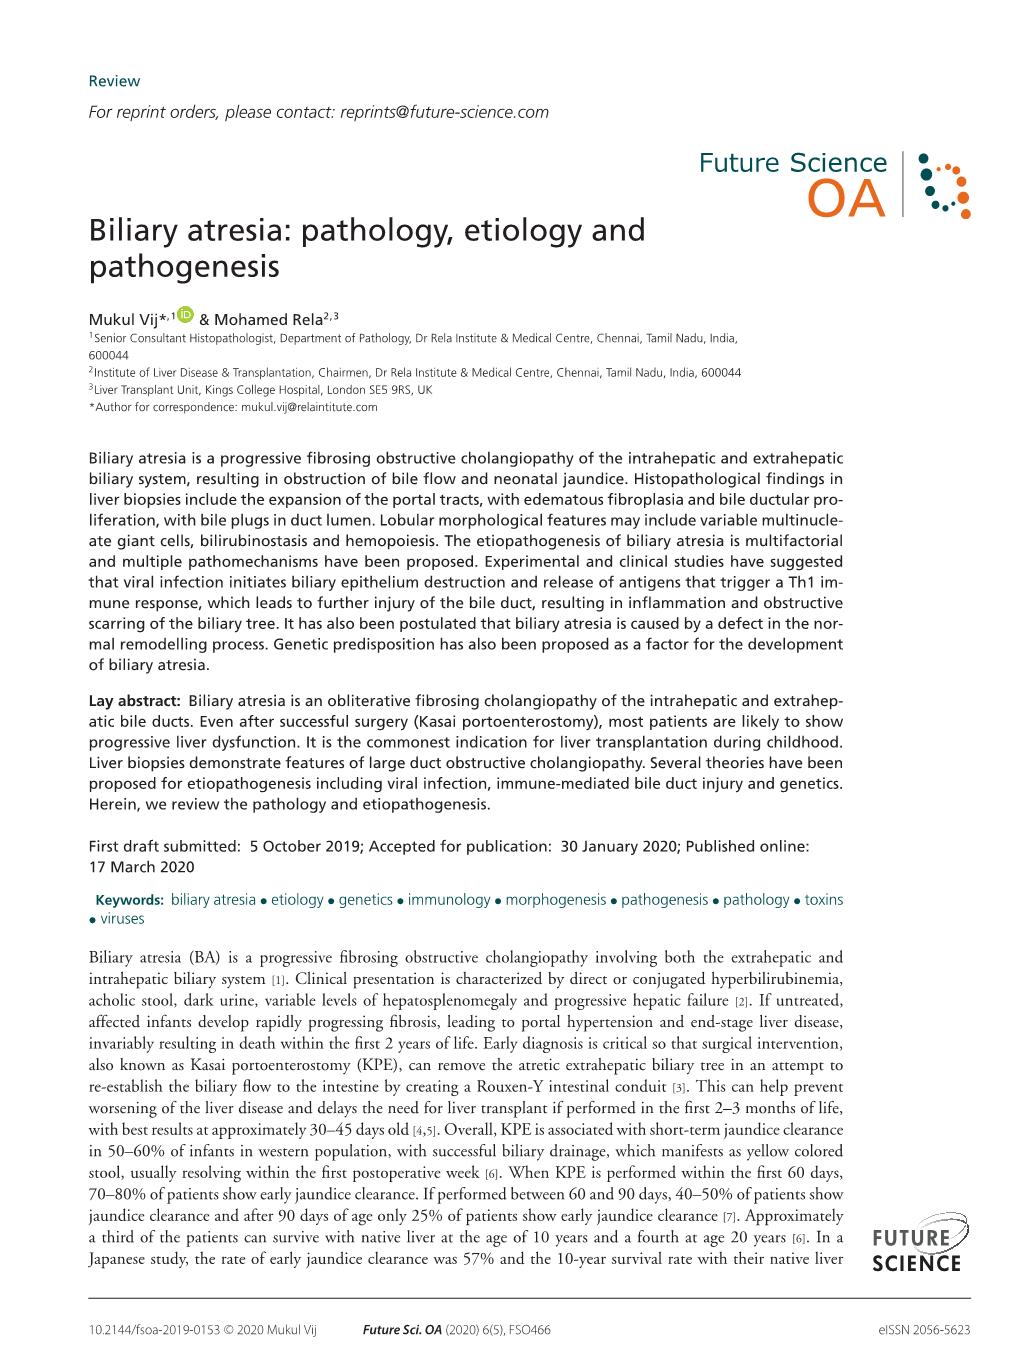 Biliary Atresia: Pathology, Etiology and Pathogenesis